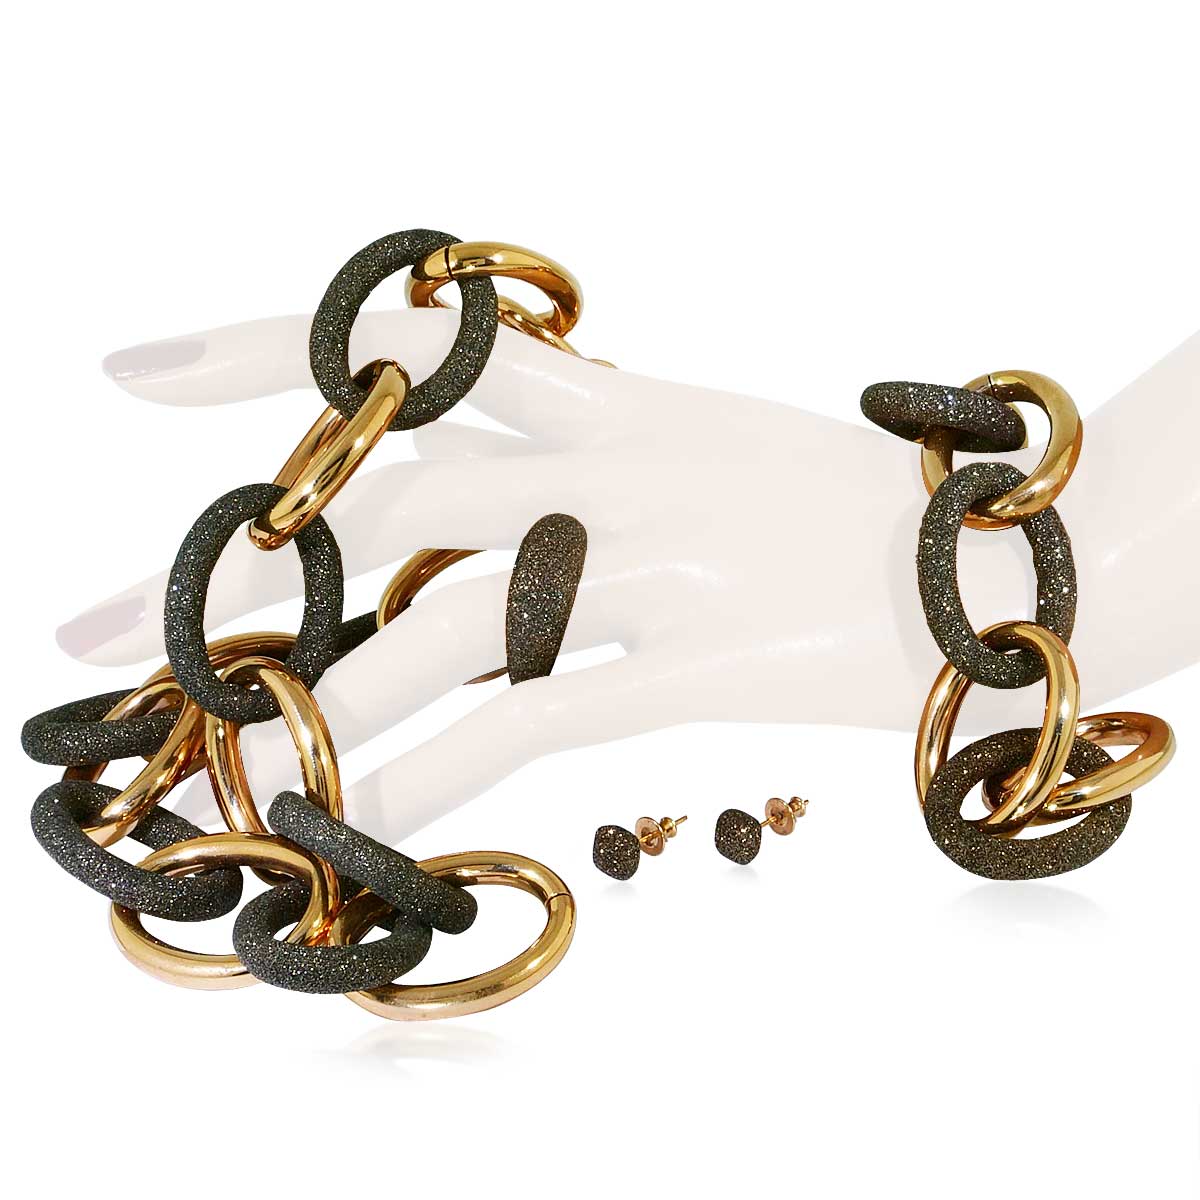 Suche nach individuellen Accessoires!Set Collier Ring Armband und Ohrstecker Sterlingsilber vergoldet 